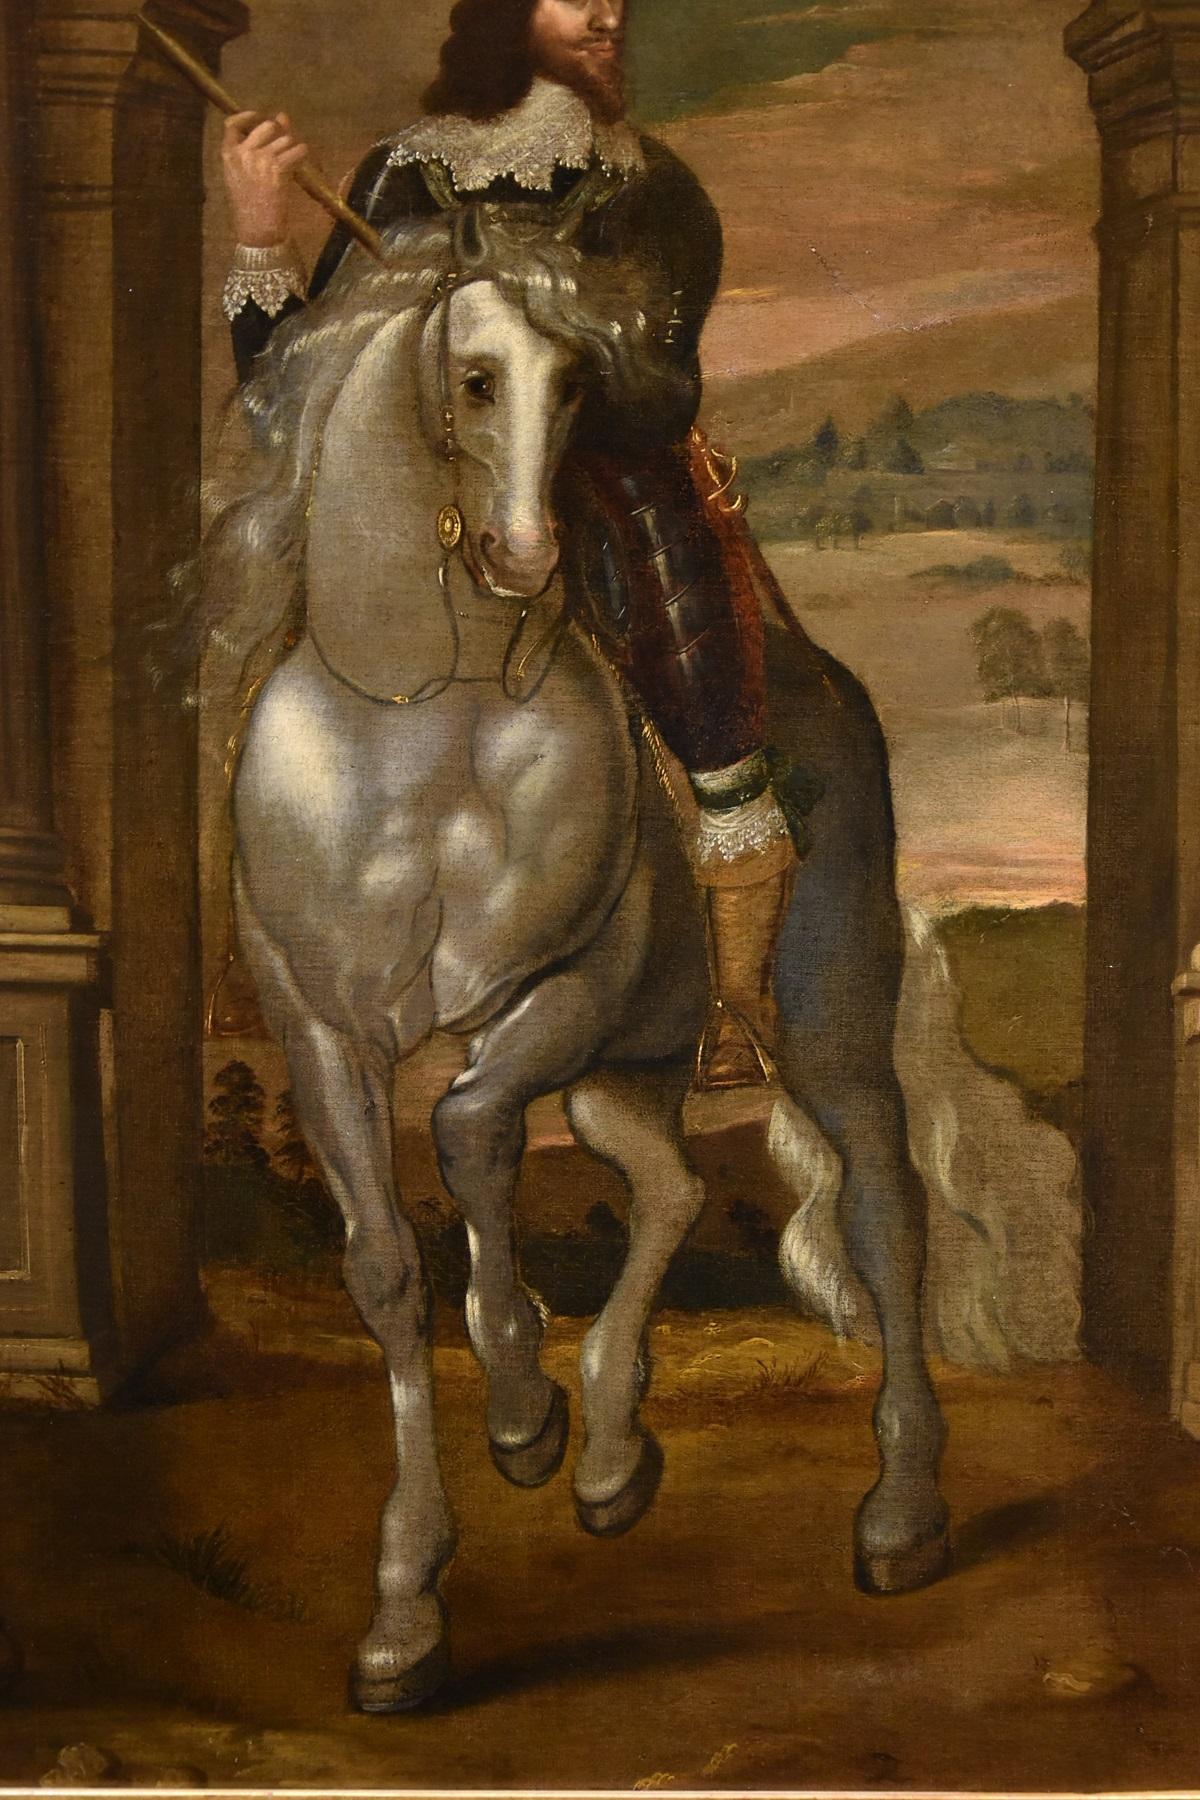 Porträt von Karl I., König von England (1600-49)
Anthoon van Dyck (Antwerpen 1599 - London 1641) Nachfolger von

Öl auf Leinwand
93 x 86 cm - Gerahmt 131 x 124

Wir stellen Ihnen ein wertvolles Werk vor, ein Ölgemälde auf Leinwand, das das berühmte